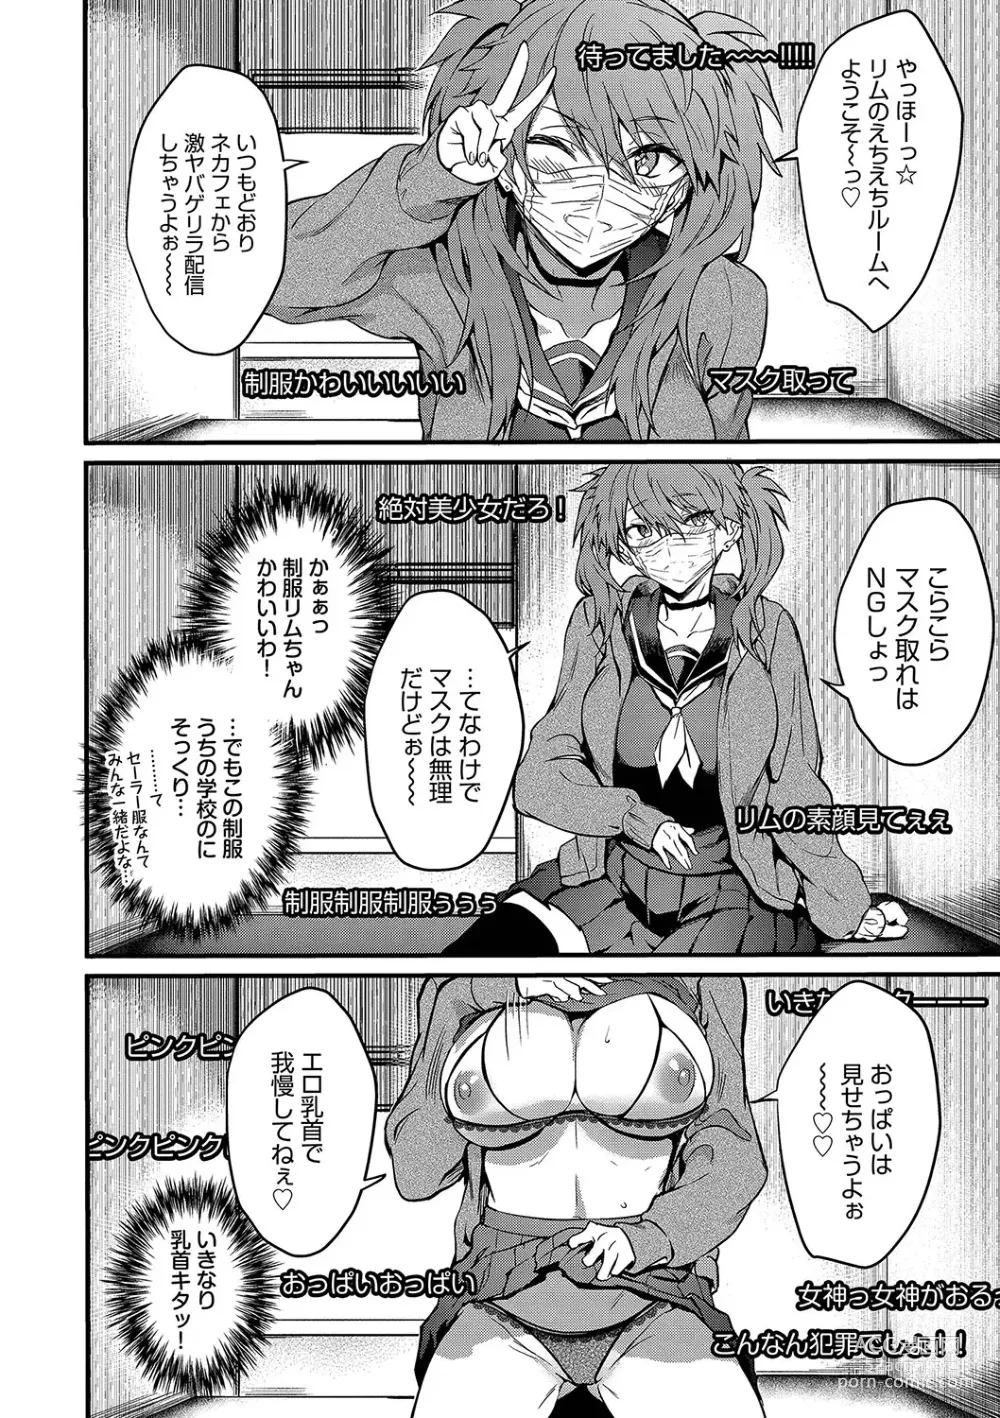 Page 7 of manga Bitch Bitch